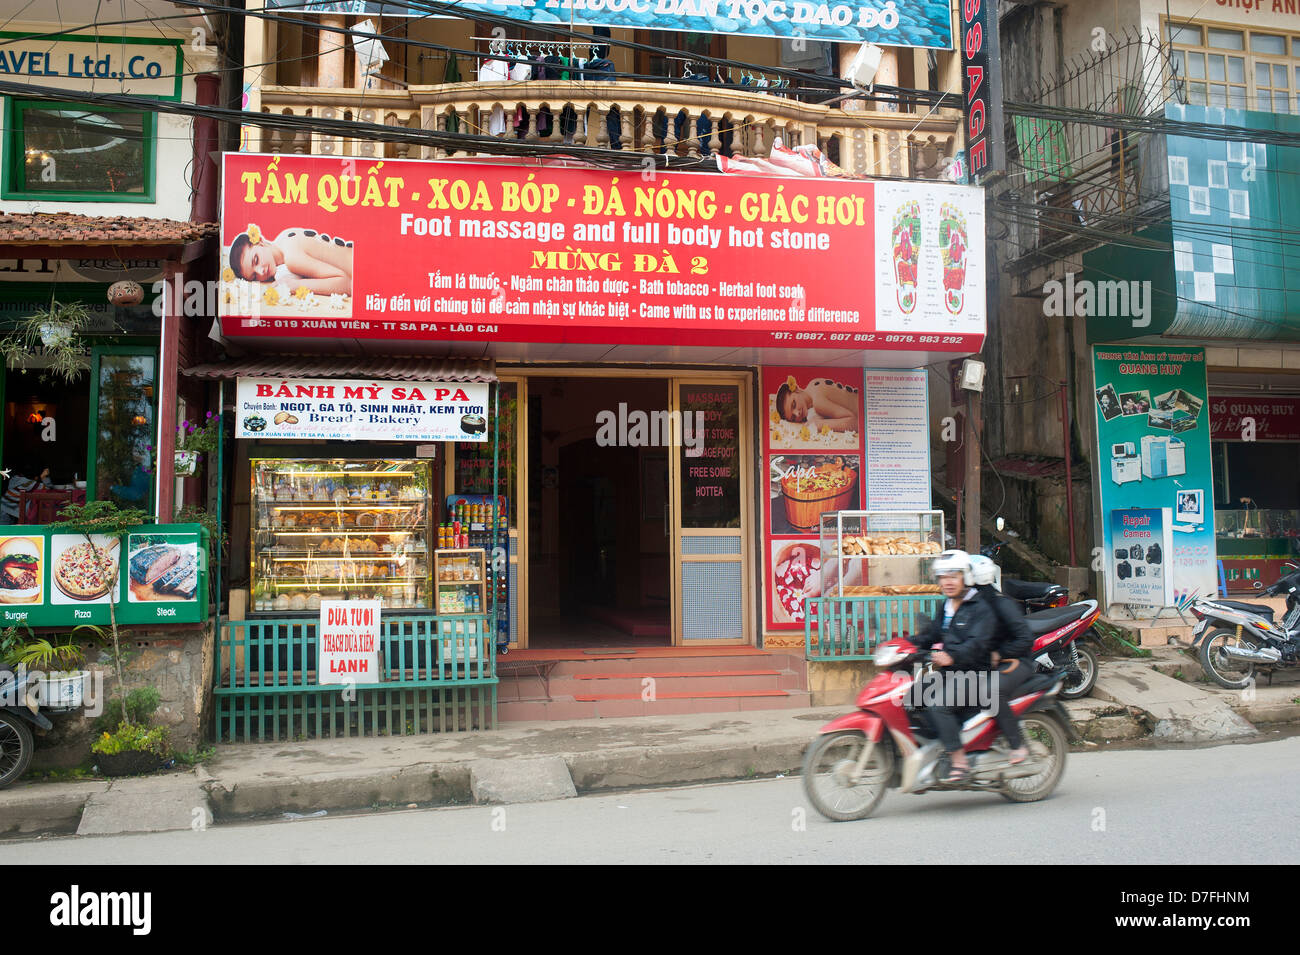 Sapa, North Vietnam - Massage parlour (Tam Quat Stock Photo - Alamy